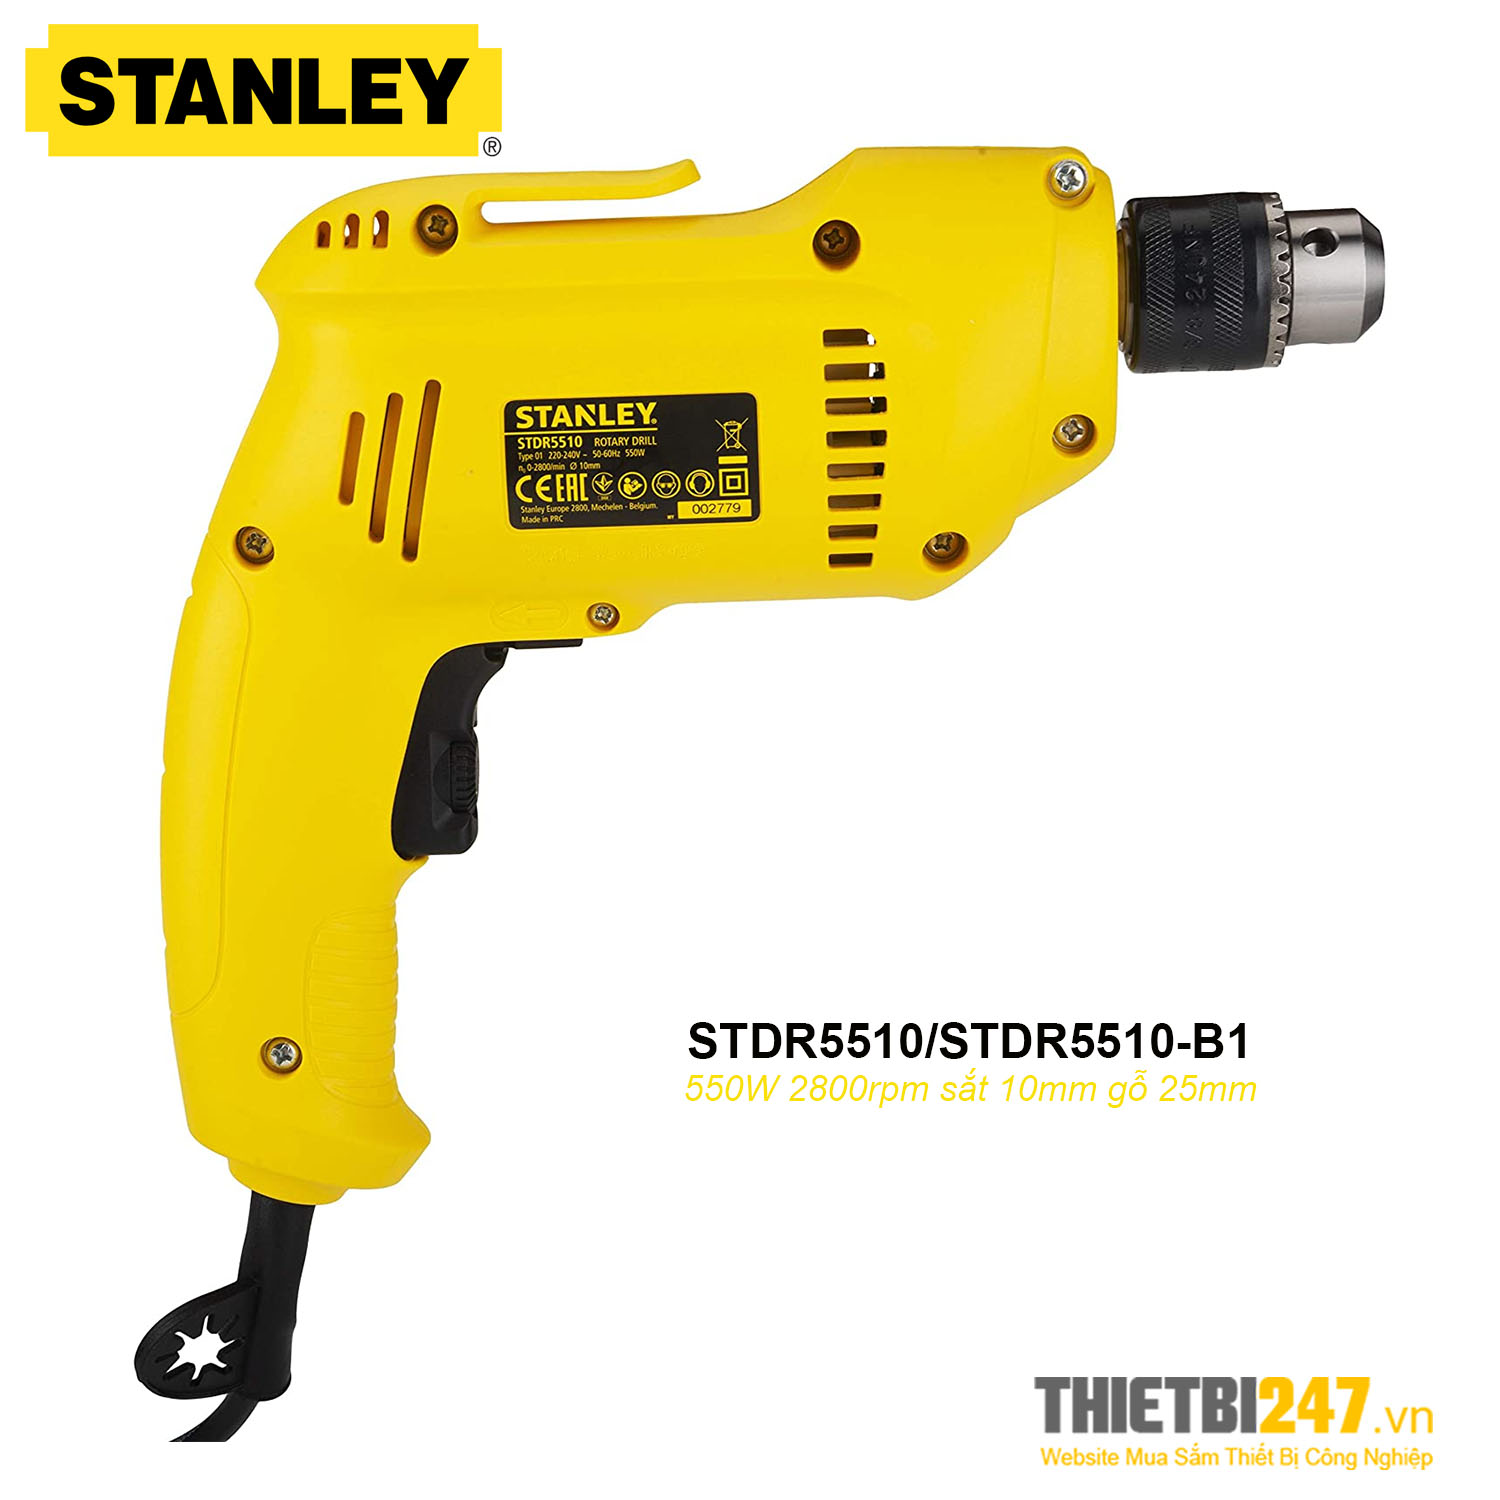 Máy khoan cầm tay Stanley STDR5510 550W 2800rpm sắt 10mm gỗ 25mm